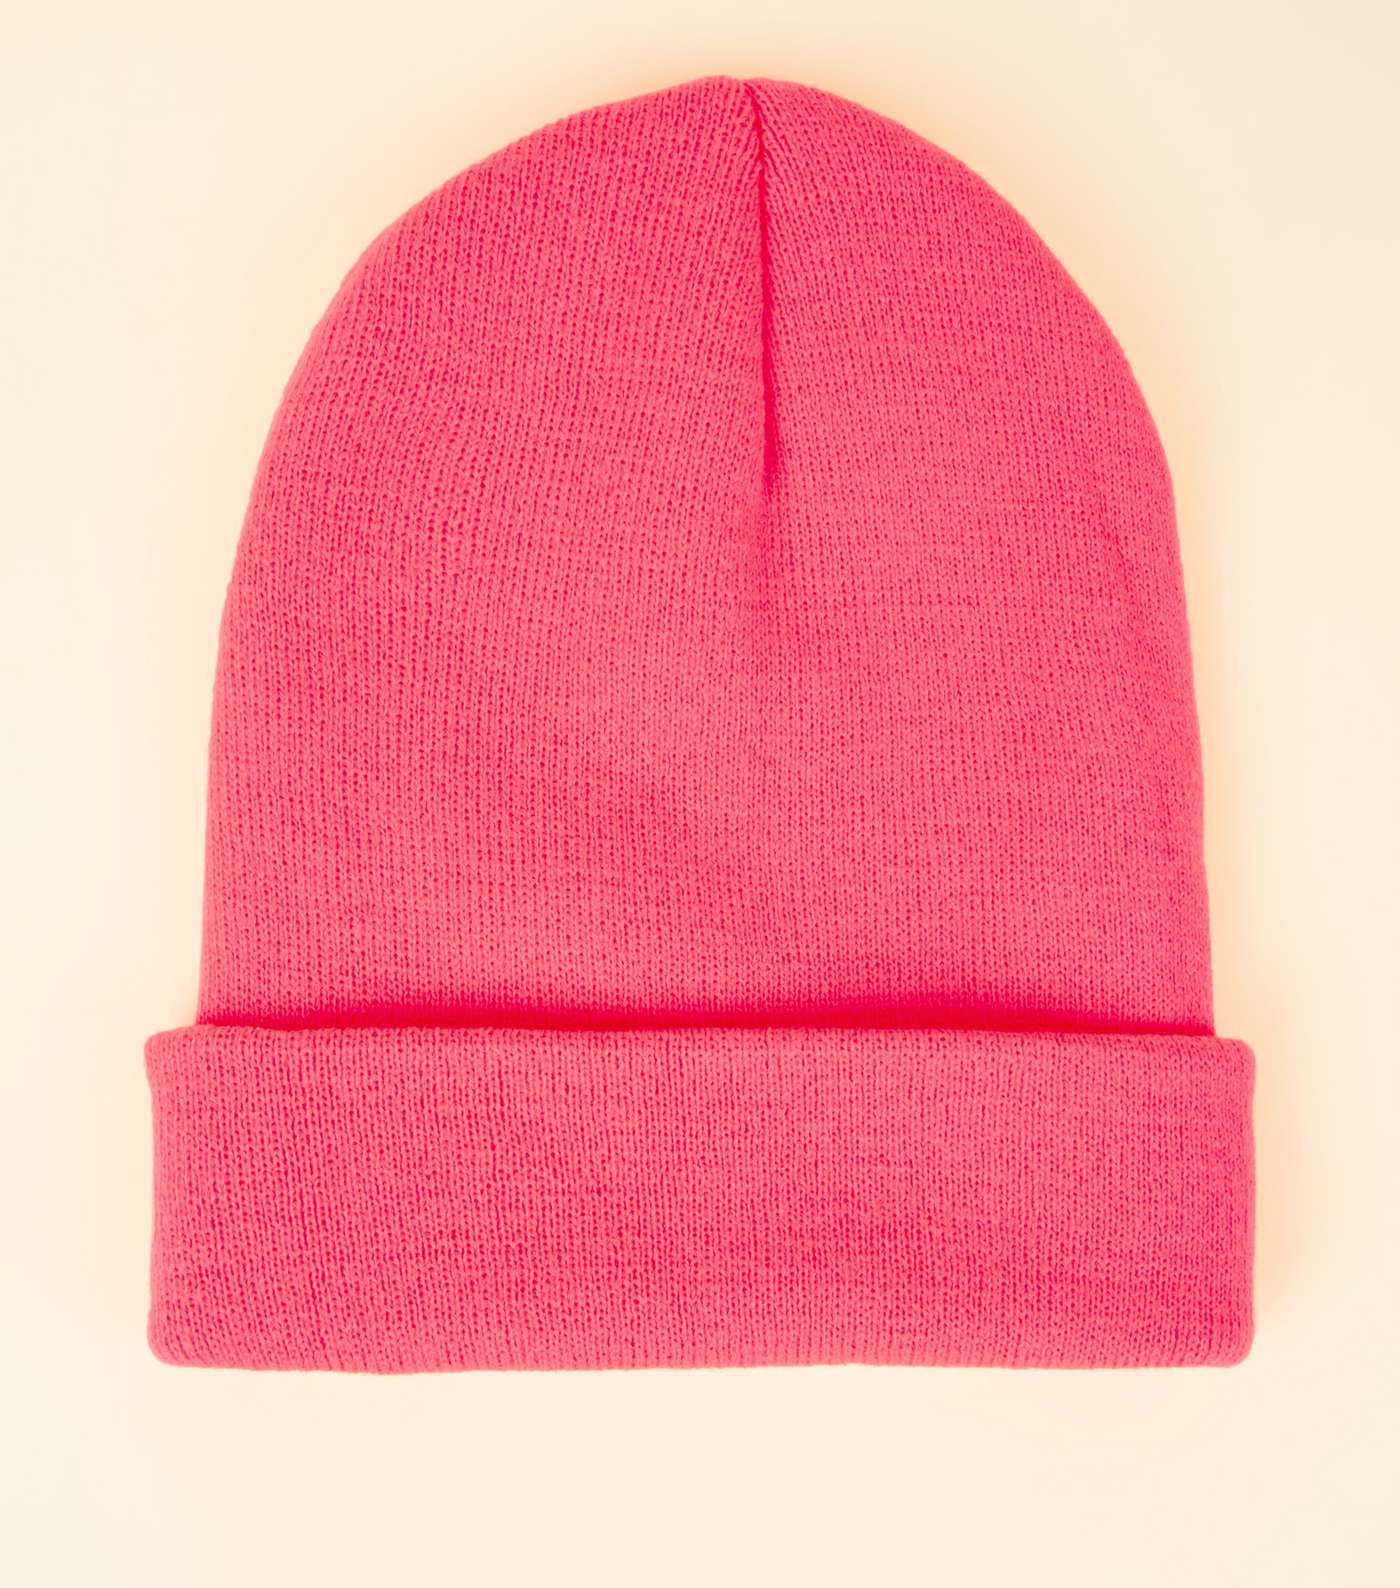 Bright Pink Neon Beanie Hat